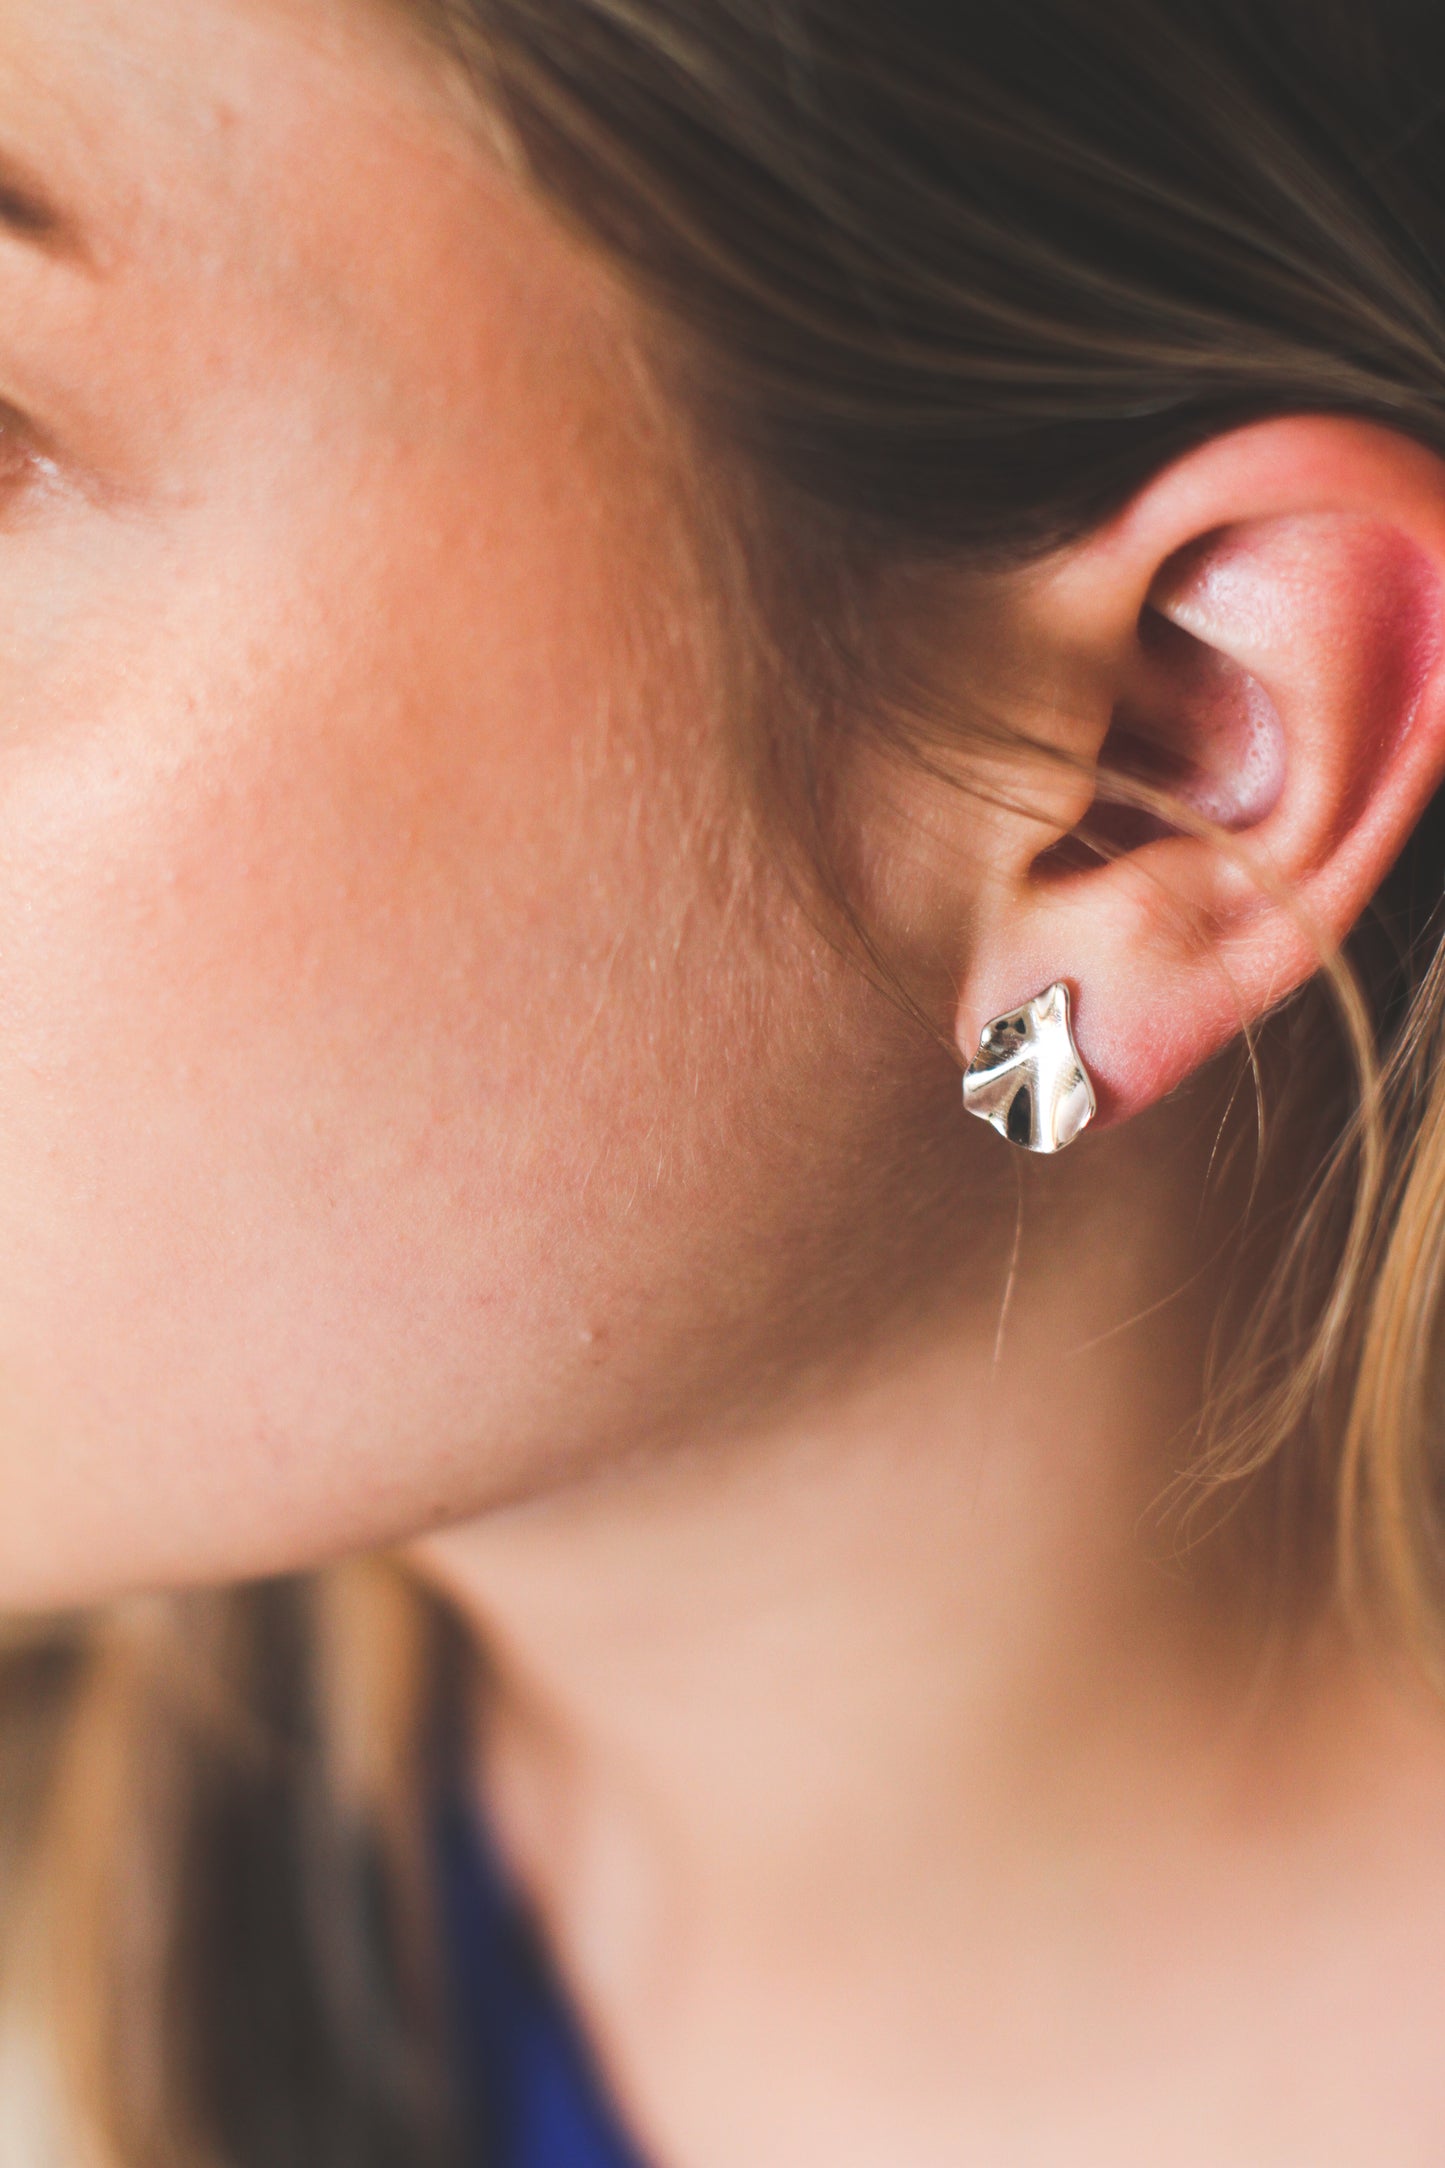 Space earrings